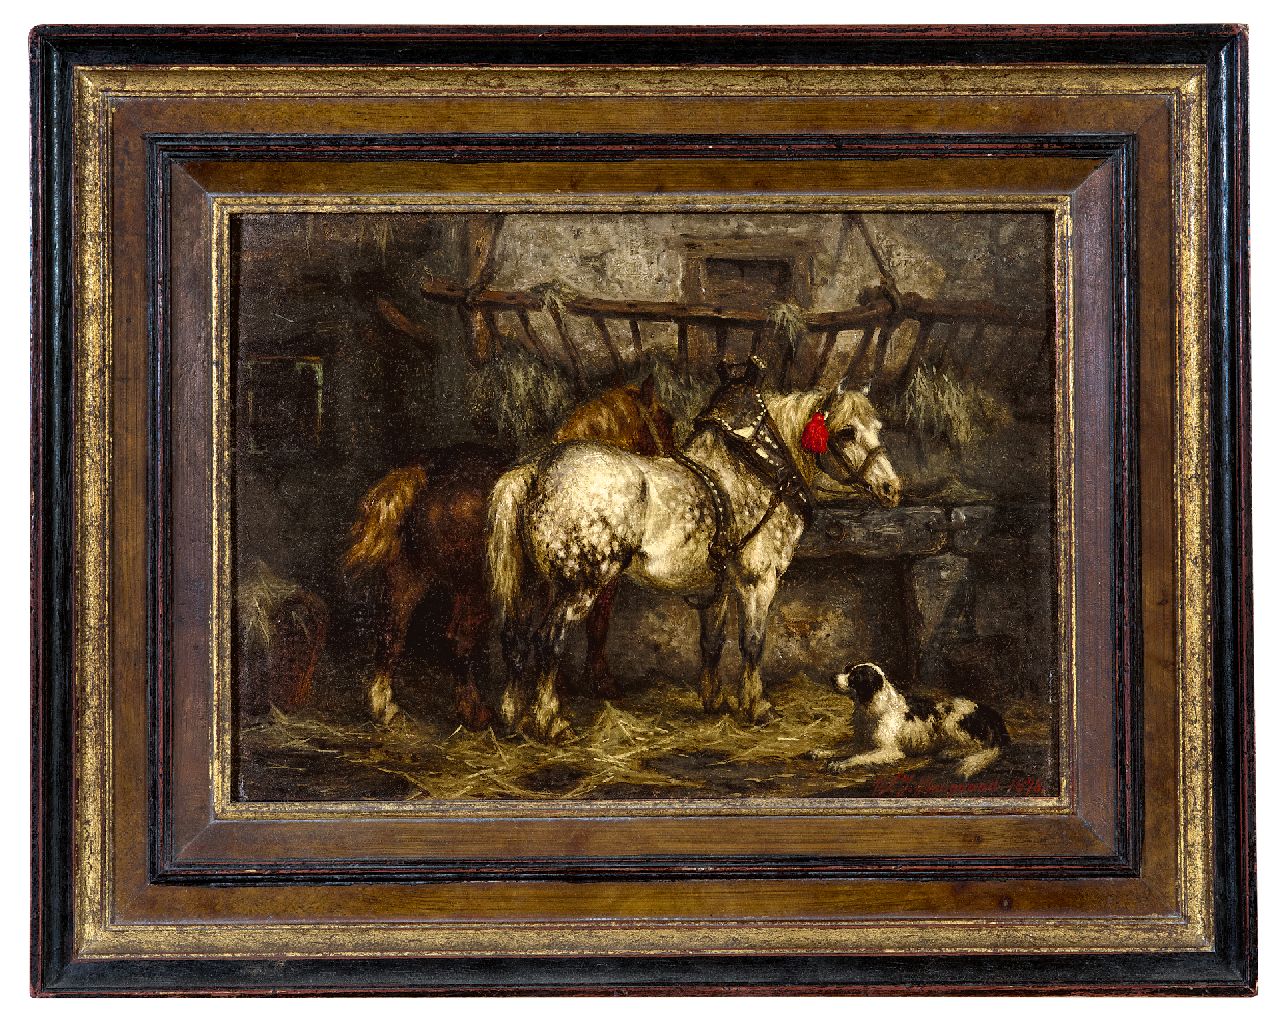 Boogaard W.J.  | Willem Johan Boogaard | Schilderijen te koop aangeboden | In de stal, olieverf op paneel 19,7 x 27,0 cm, gesigneerd rechtsonder en gedateerd 1878